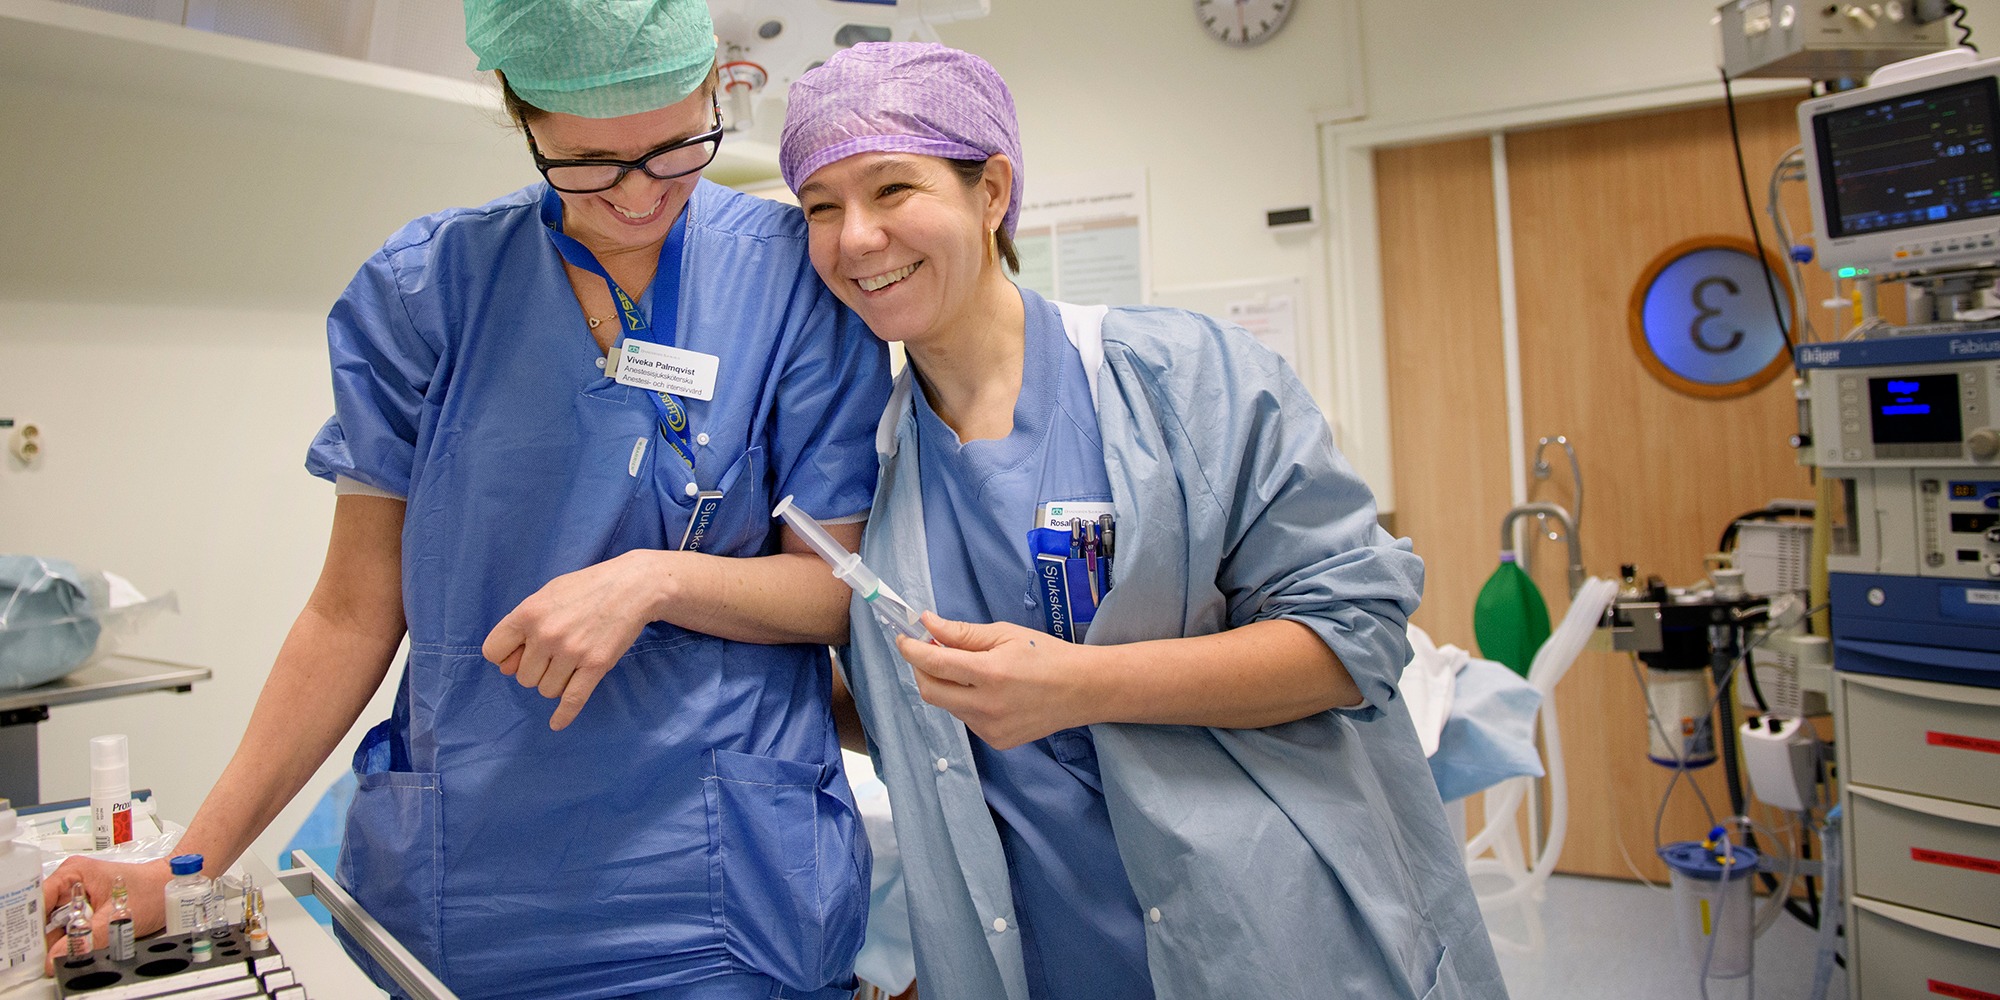 Två kvinnor i sjukhuskläder skrattar tillsammans i operationssal.